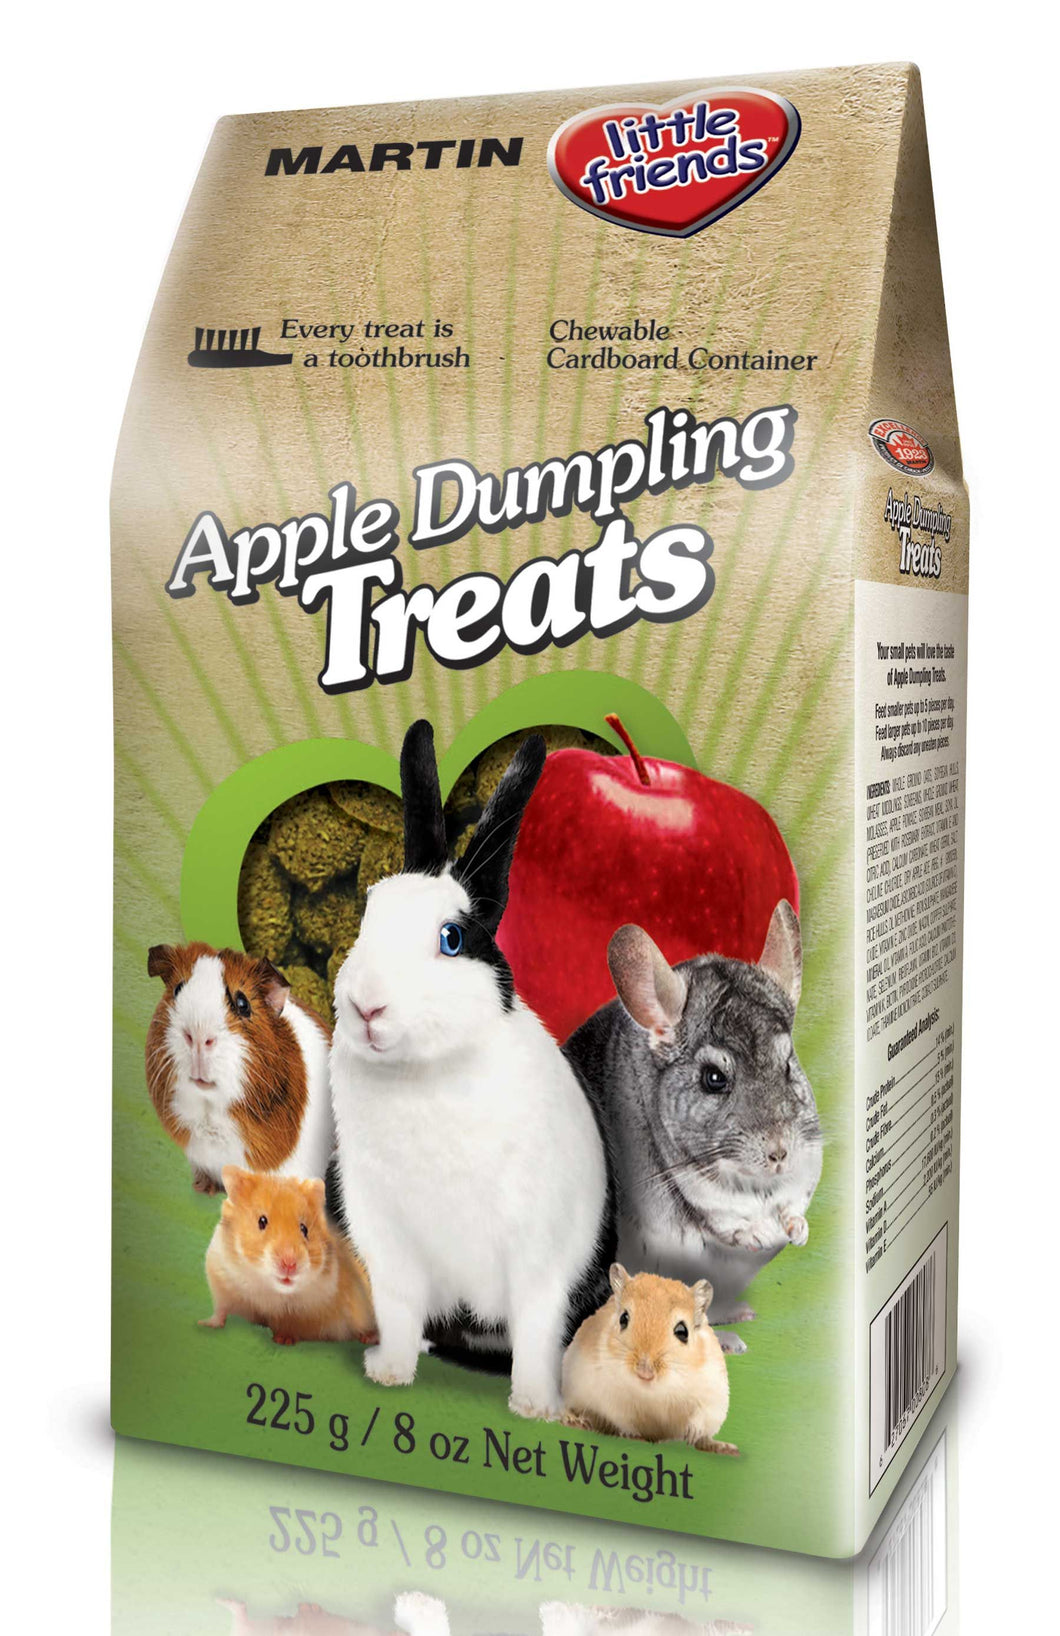 Little Friends Apple Dumpling Treats